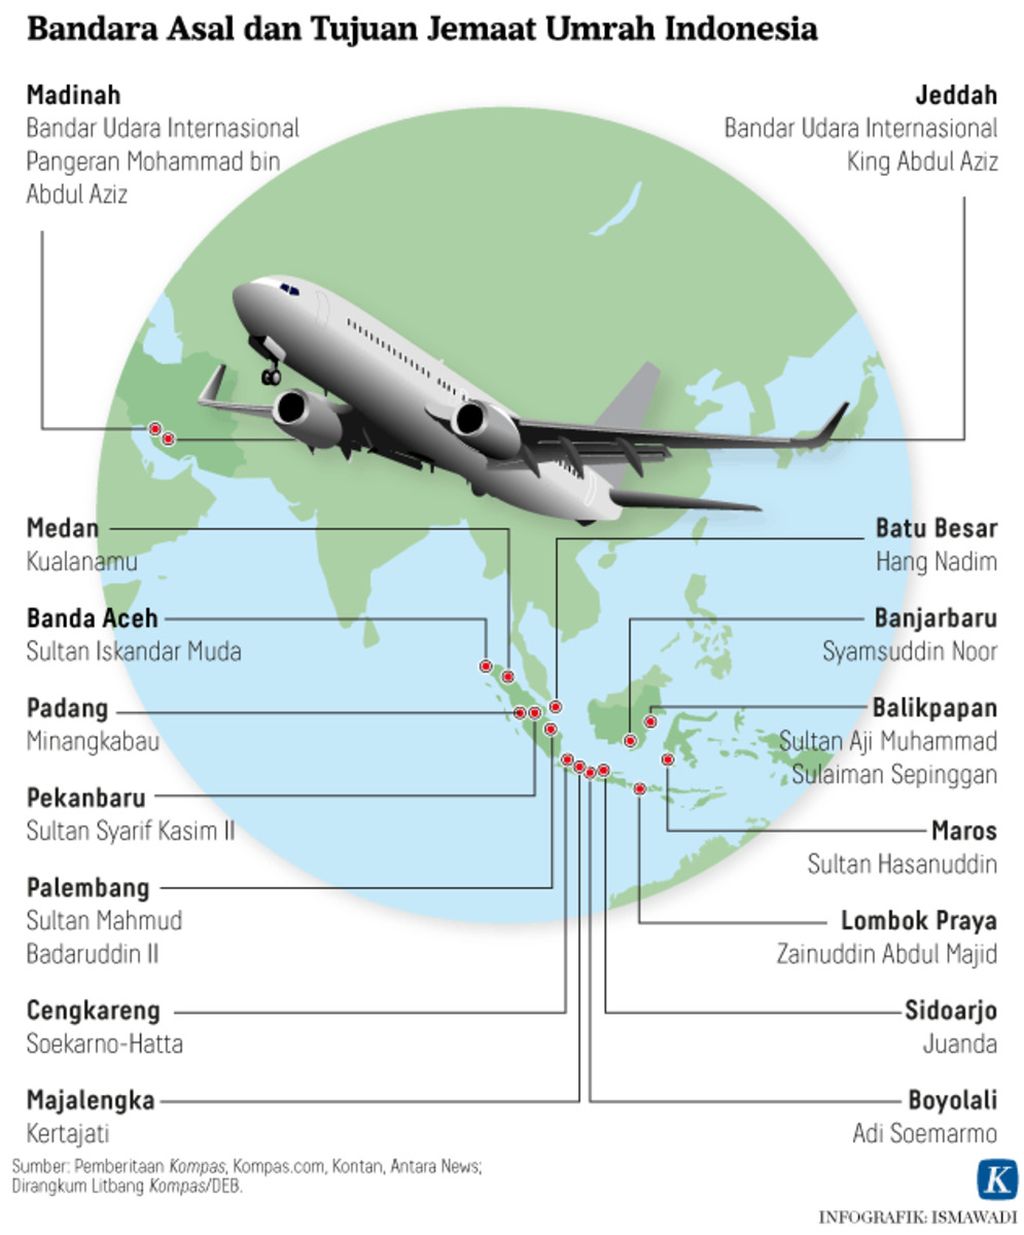 Infografik Bandara Asal dan Tujuan Jemaat Umrah Indonesia